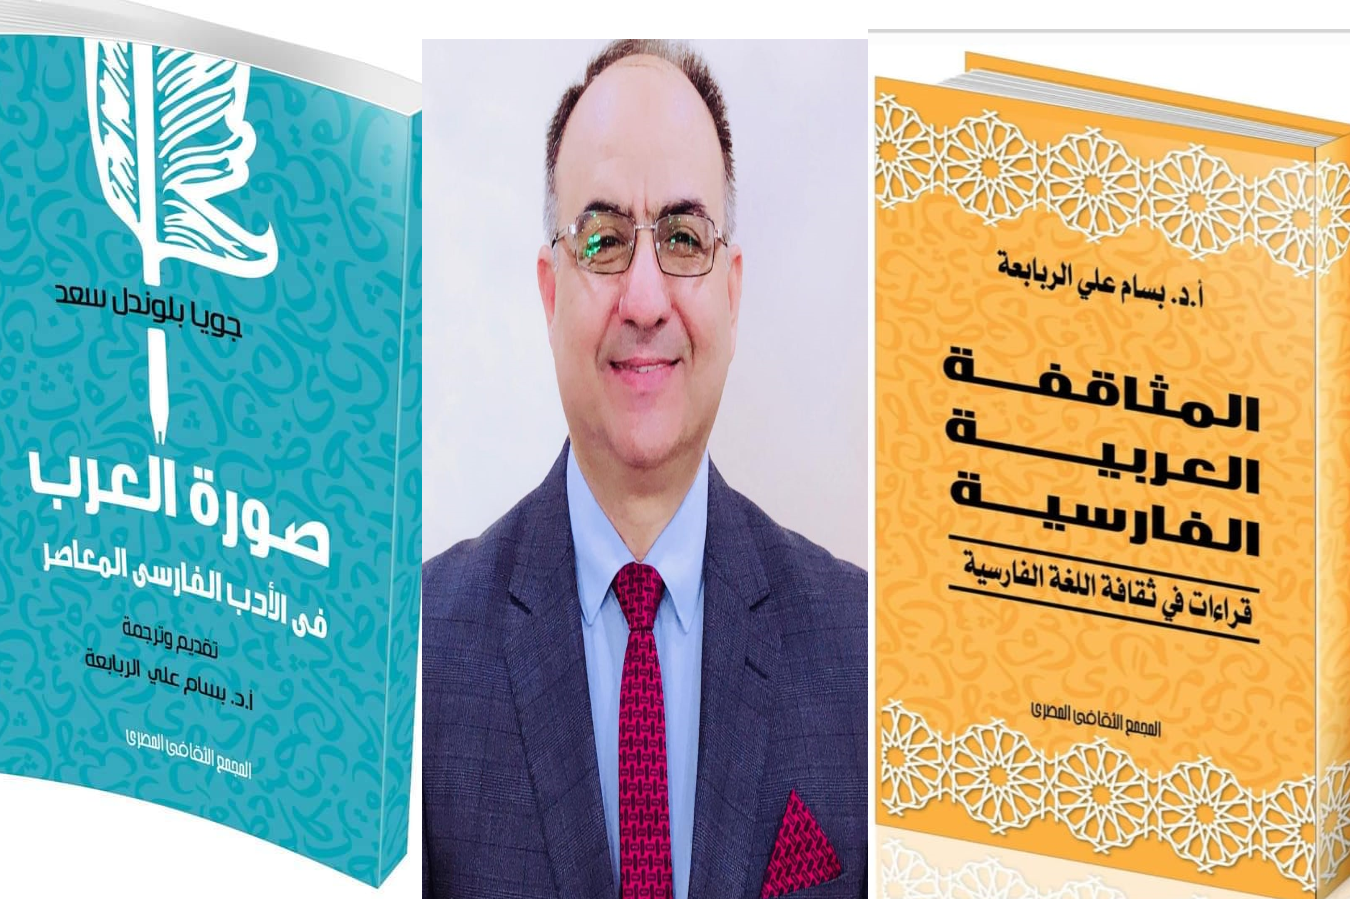 كتابان في الأدب الفارسي المعاصر لـرئيس قسم اللغات السامية والشرقية الأستاذ الدكتور بسام الربابعة